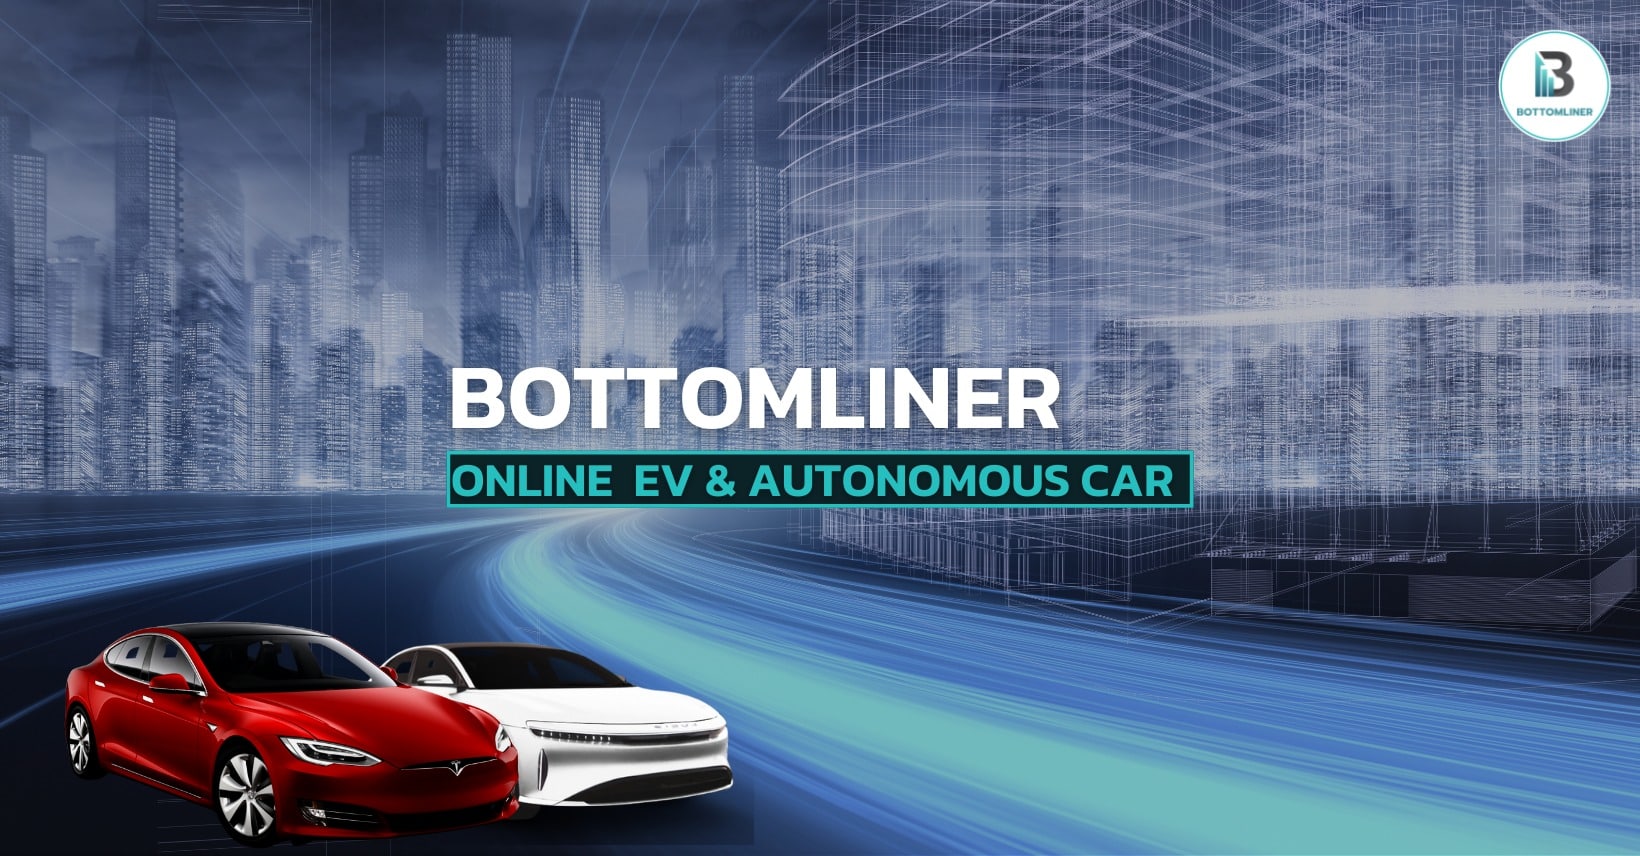 Online EV & Autonomous Car